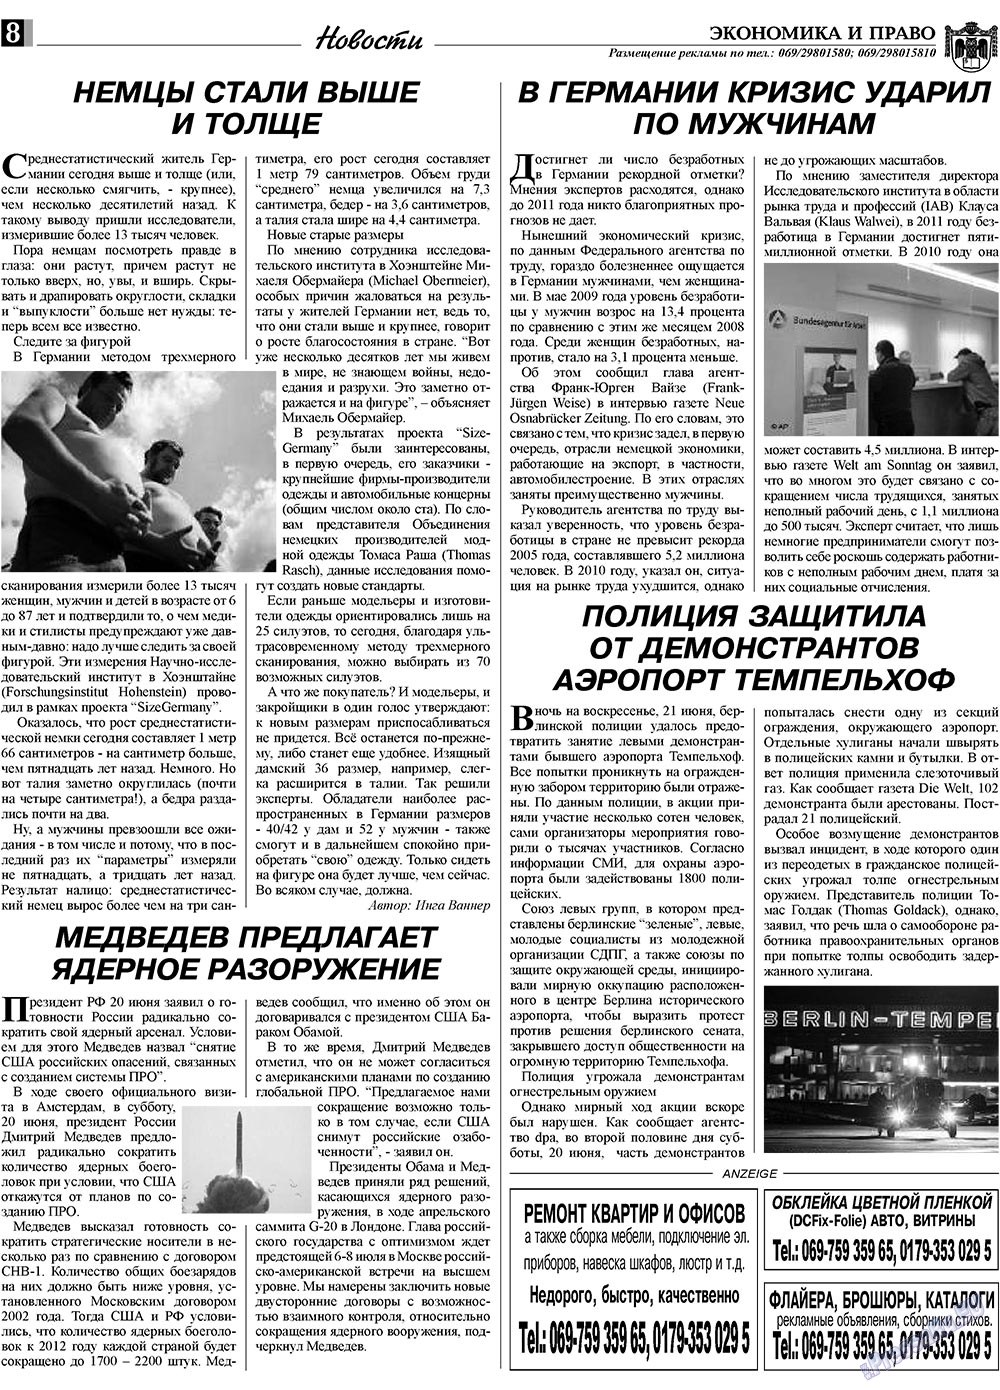 Экономика и право, газета. 2009 №7 стр.8